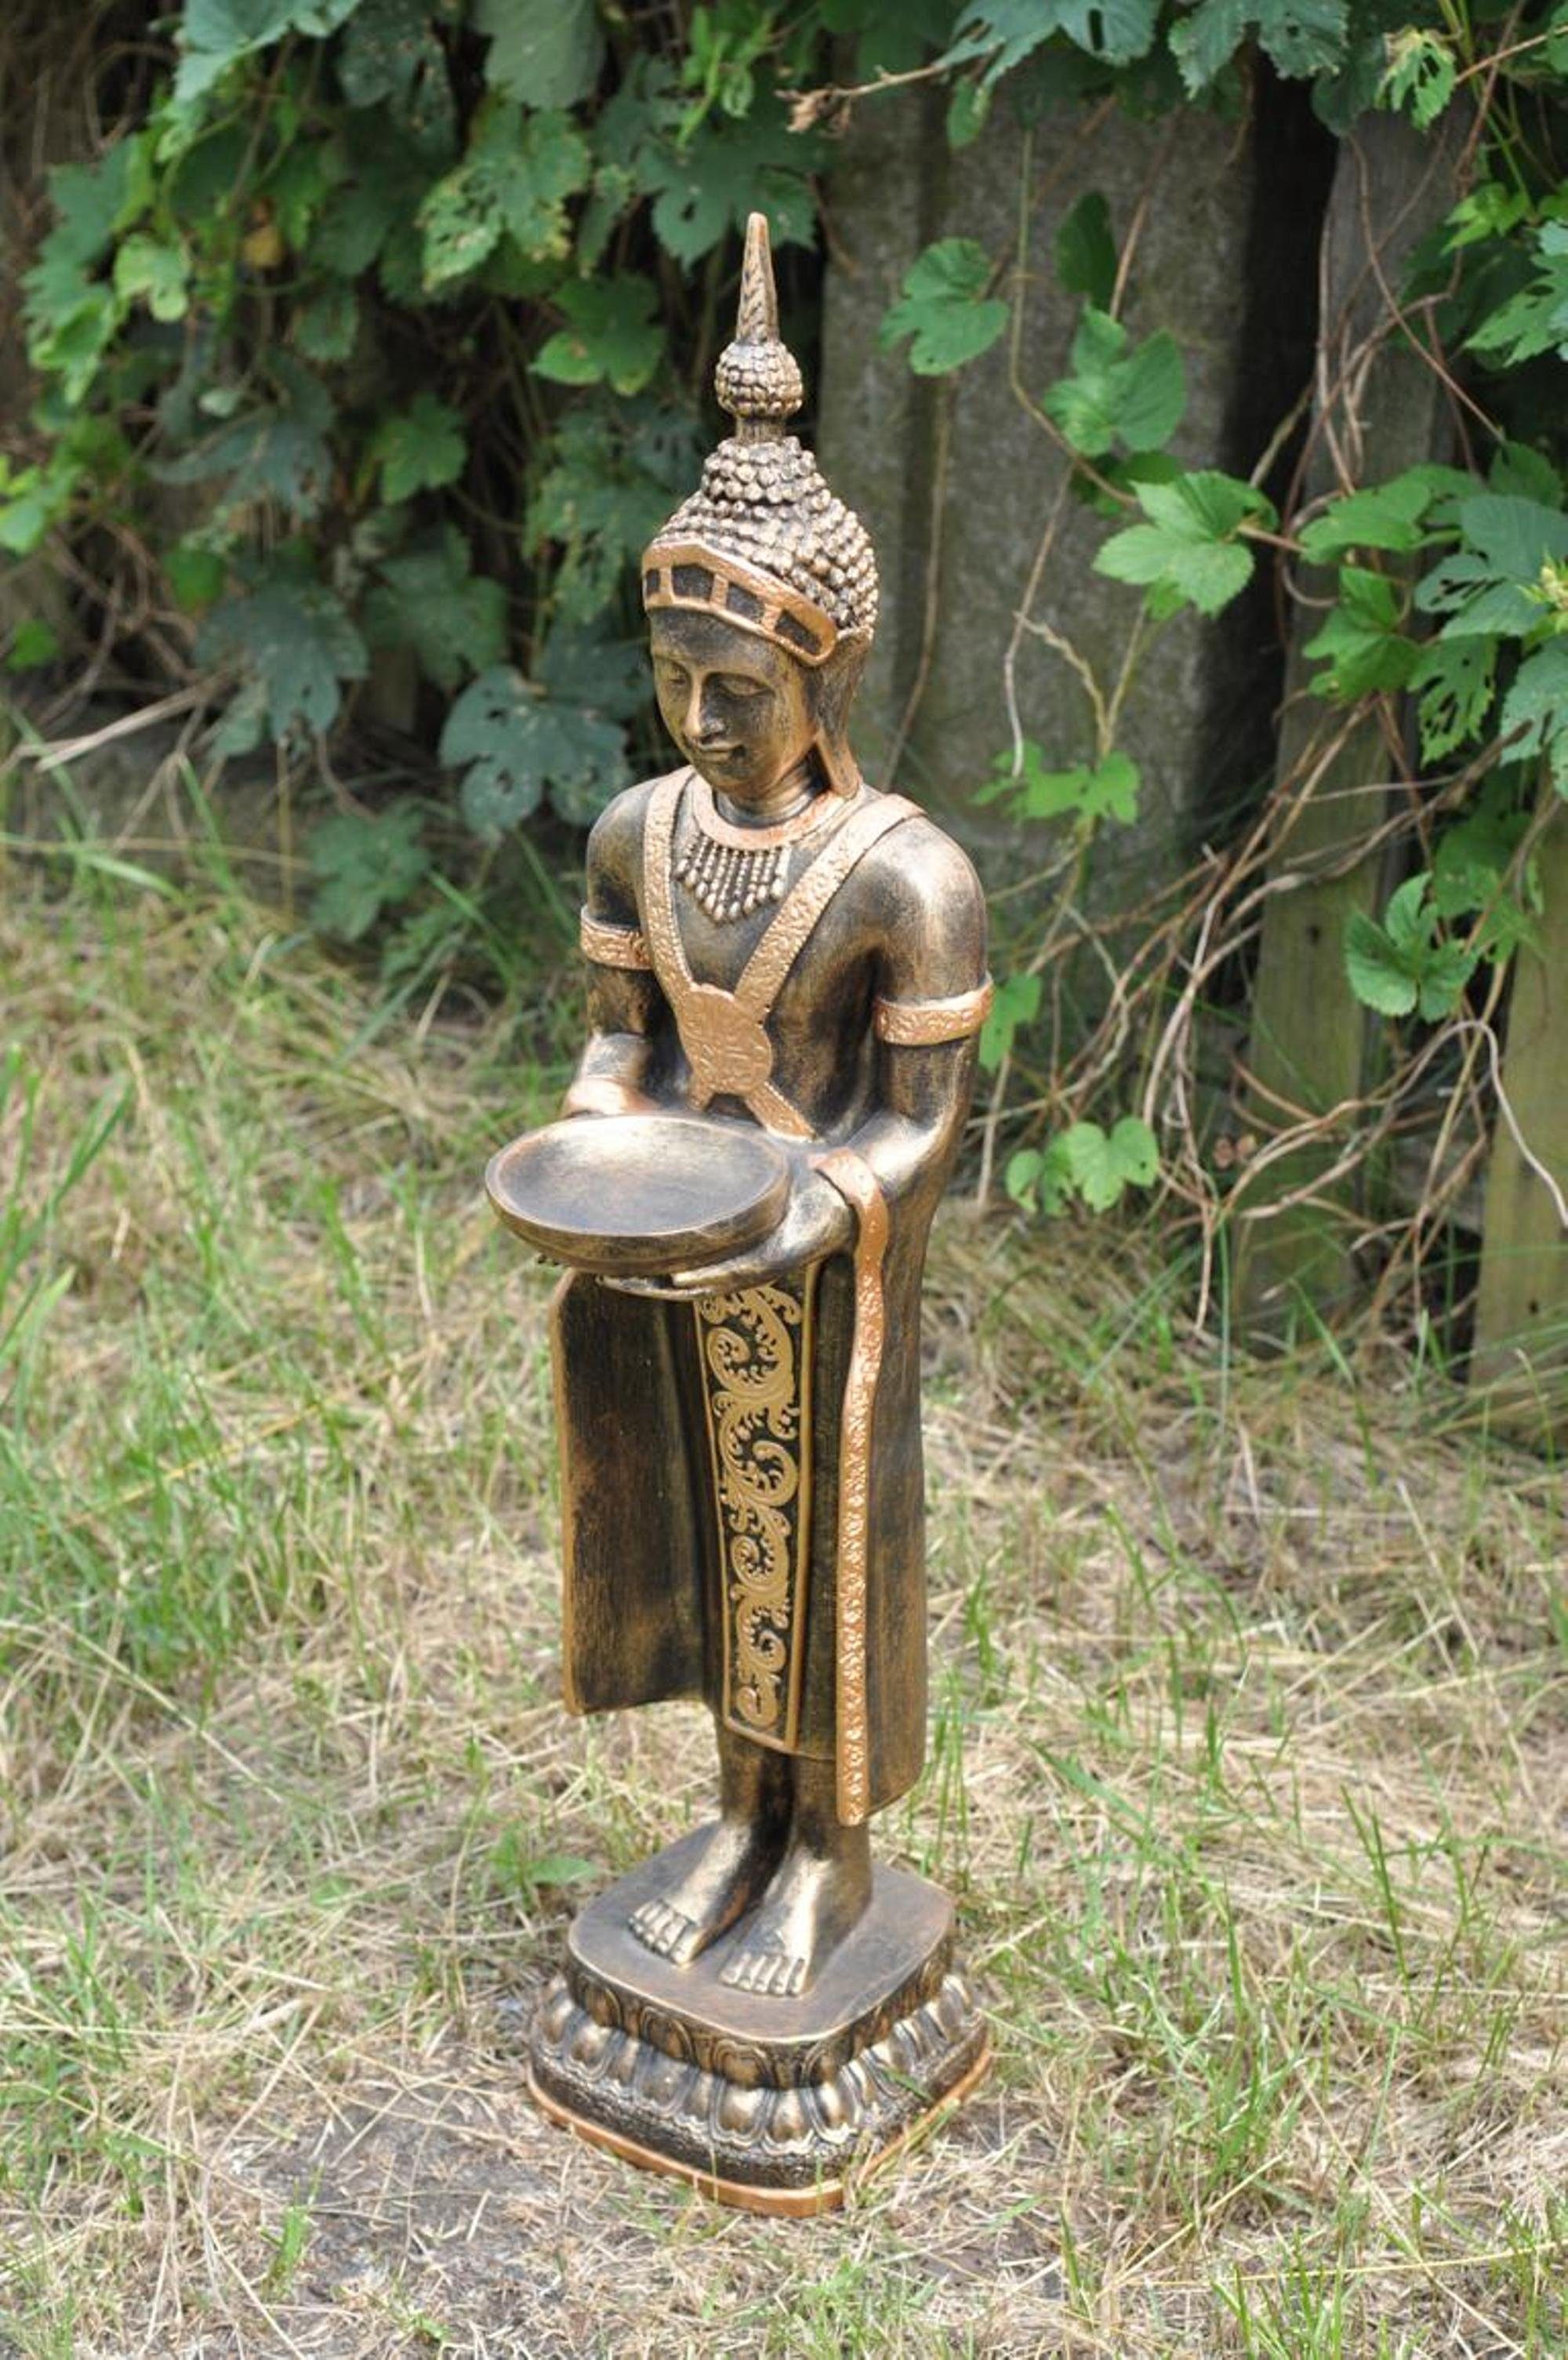 Skulpturen Statue Figuren Skulptur JVmoebel Figur Skulptur Design Buddha 72cm Deko